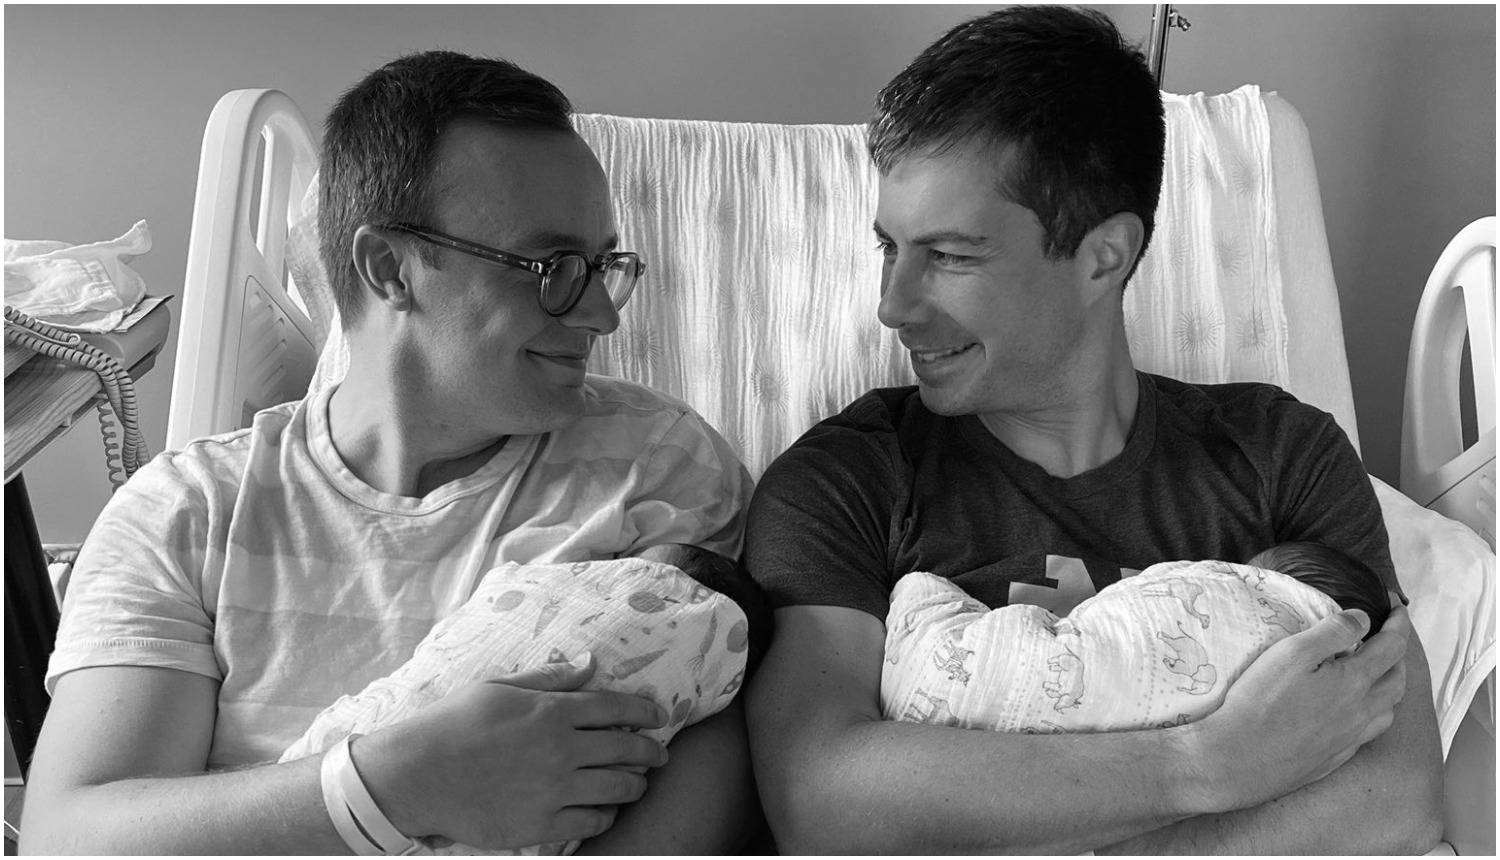 Prvi američki deklarirani gay ministar je s mužem dobio blizance, pohvalili su se fotkom